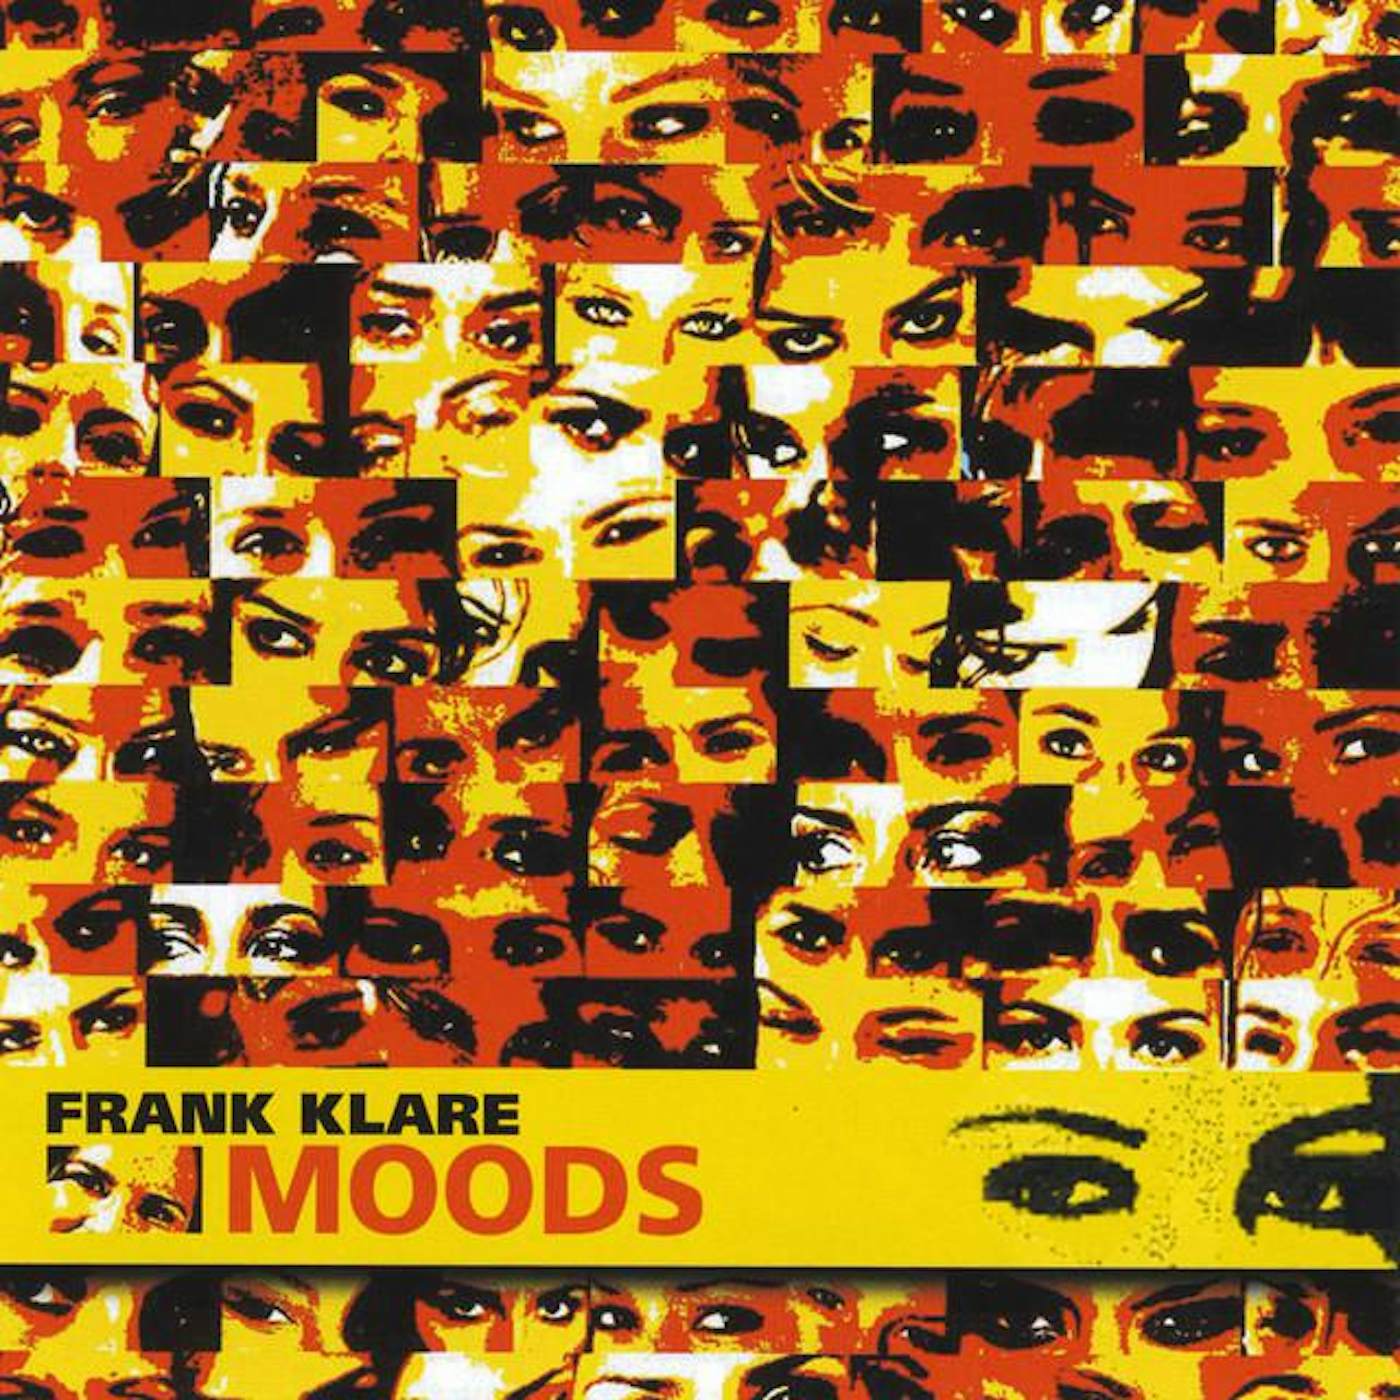 Frank Klare